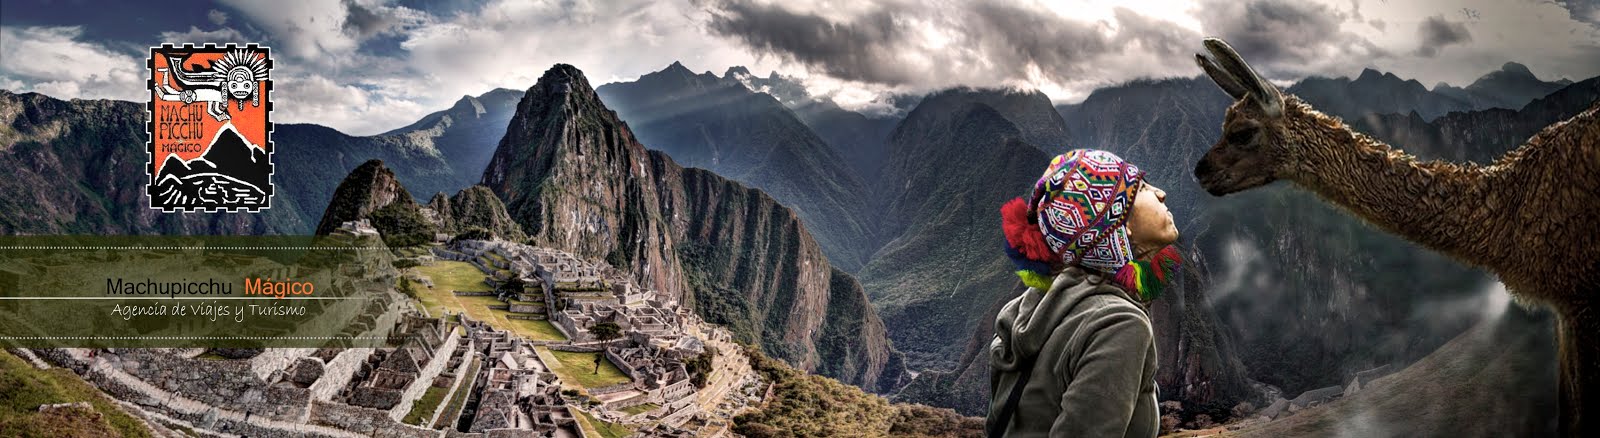 Machu Picchu Magico Viajes Agencia de Viajes y Turismo en Perú - Tours Perú Machu Picchu